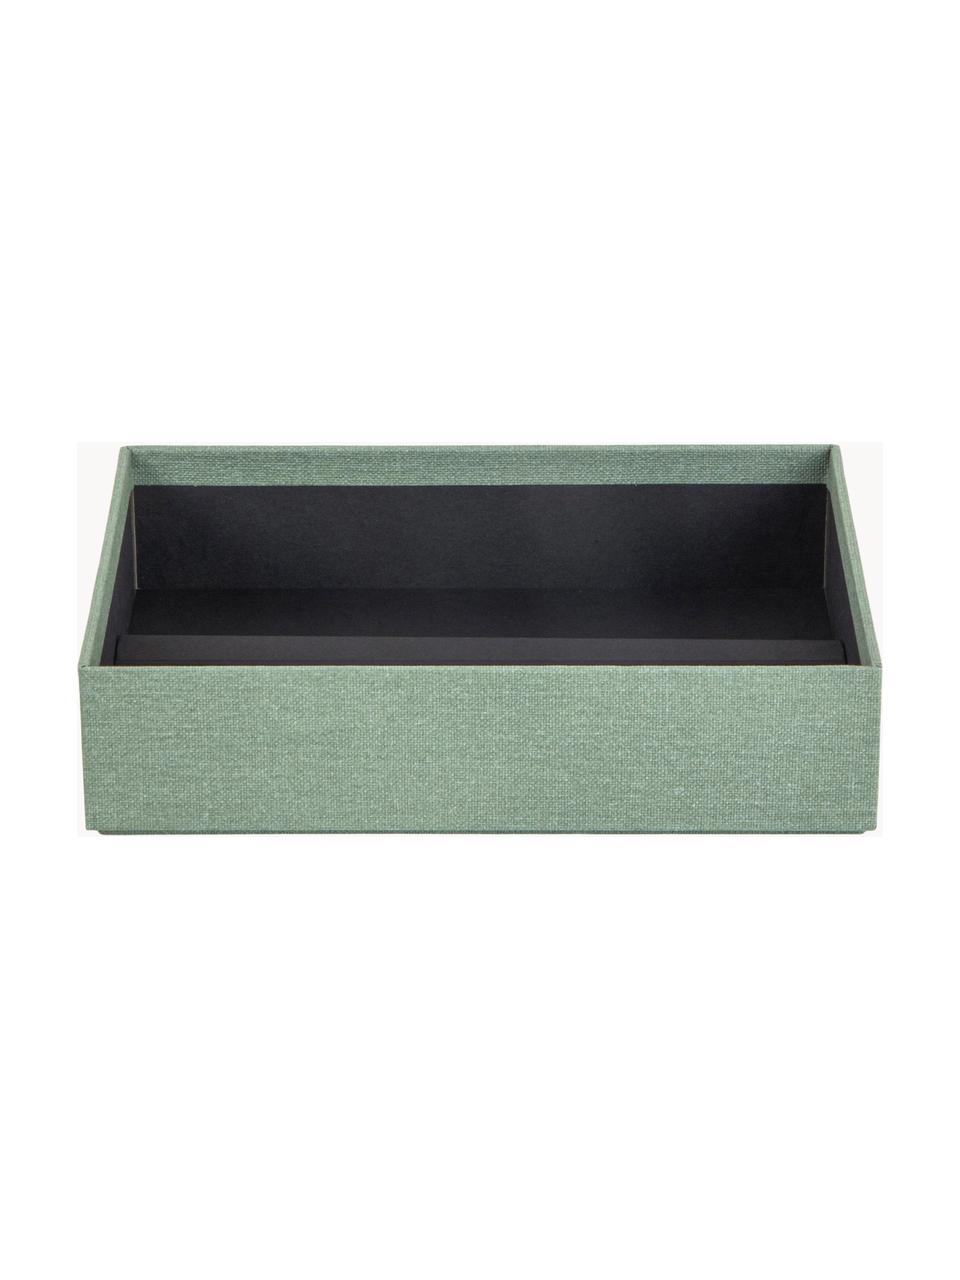 Pudełko na biżuterię Precious, Tektura, Szałwiowy zielony, S 27 x G 19 cm